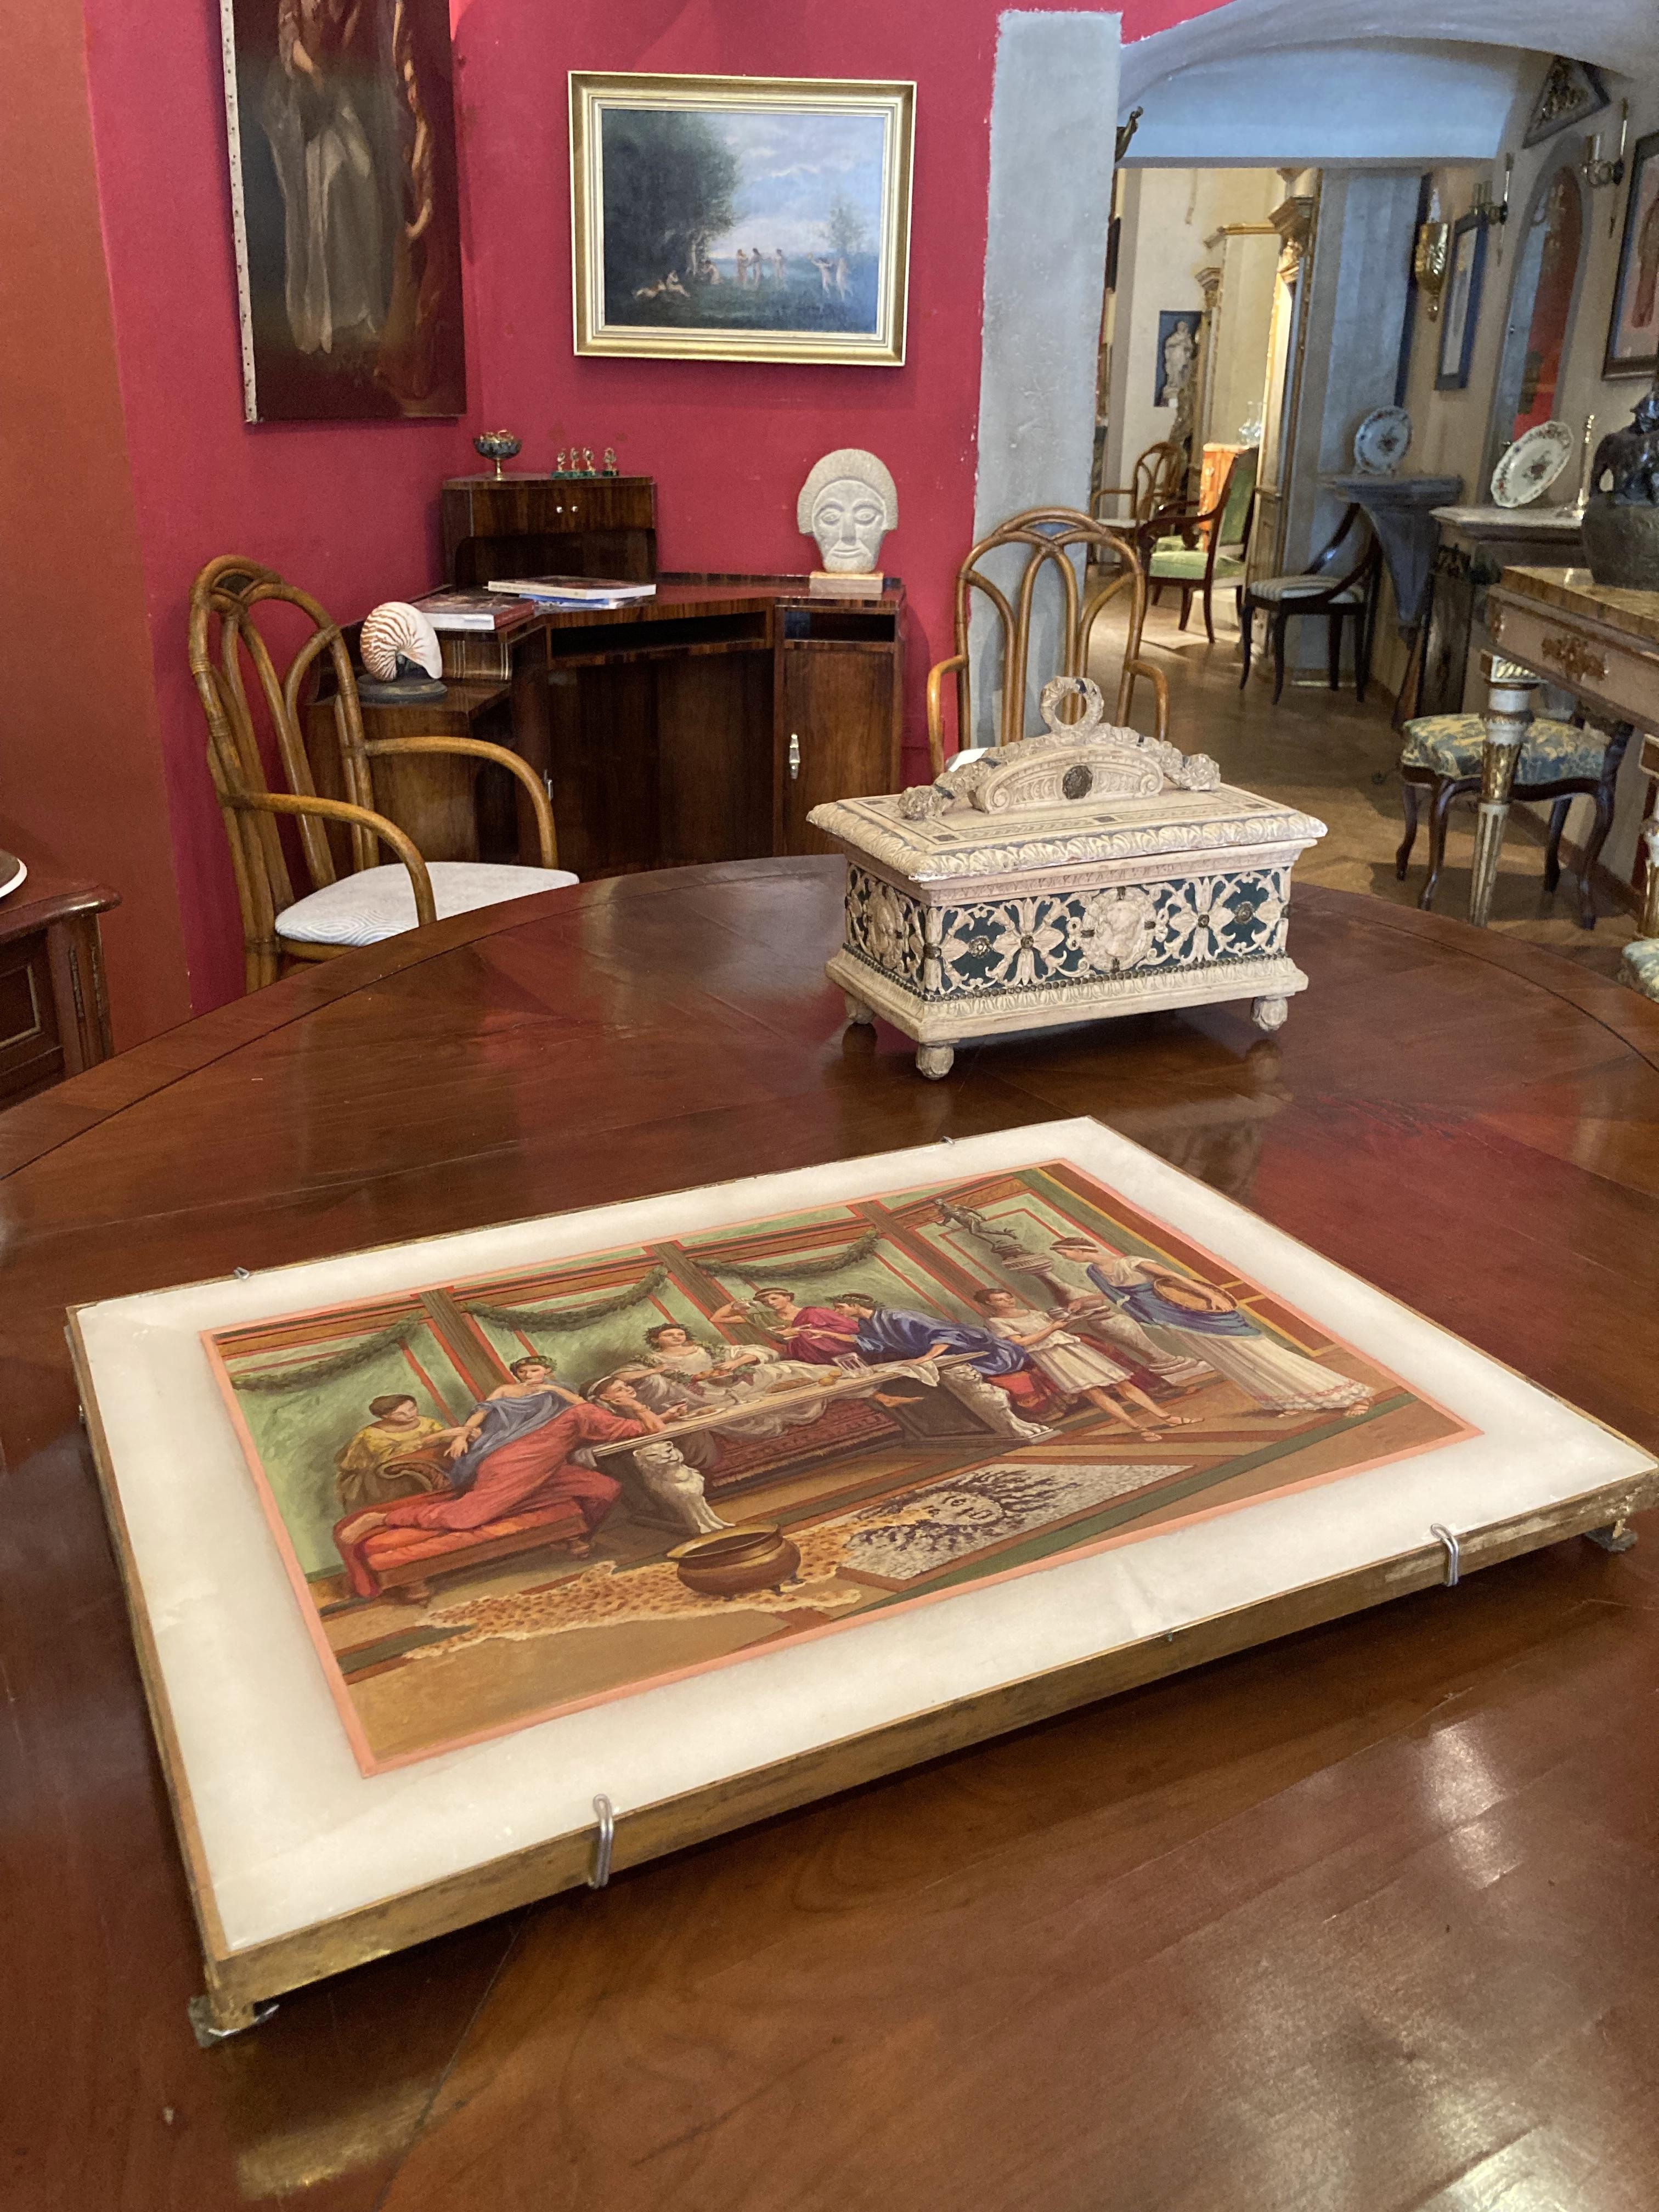 Cette huile sur albâtre italienne du XIXe siècle représente un intérieur opulent de style néoclassique pompéien avec des gens en train de festoyer.
La scène intérieure figurative est peinte sur une plaque d'albâtre rectangulaire et placée dans un